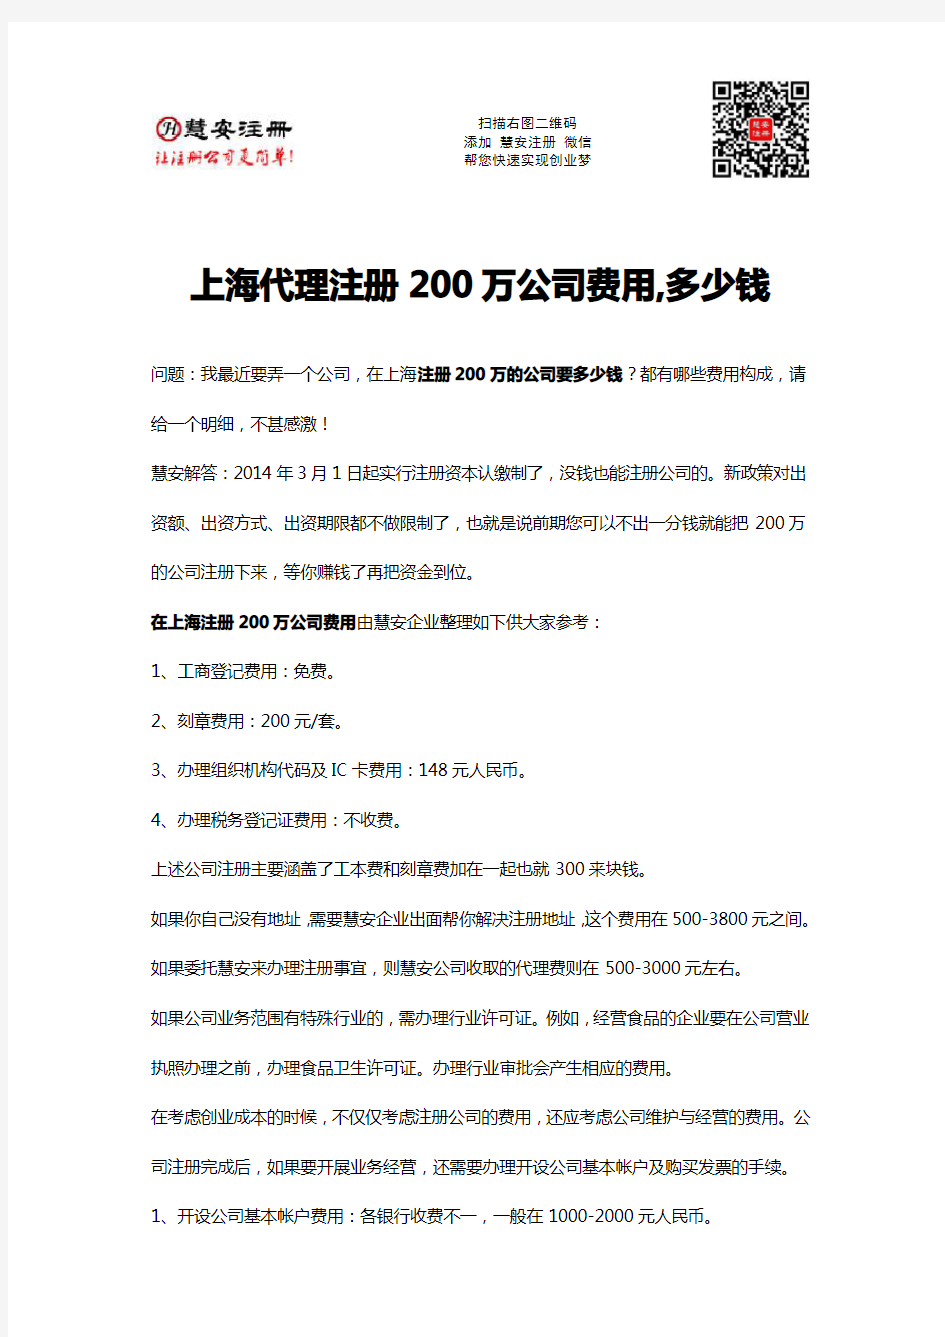 上海代理注册200万公司费用,多少钱